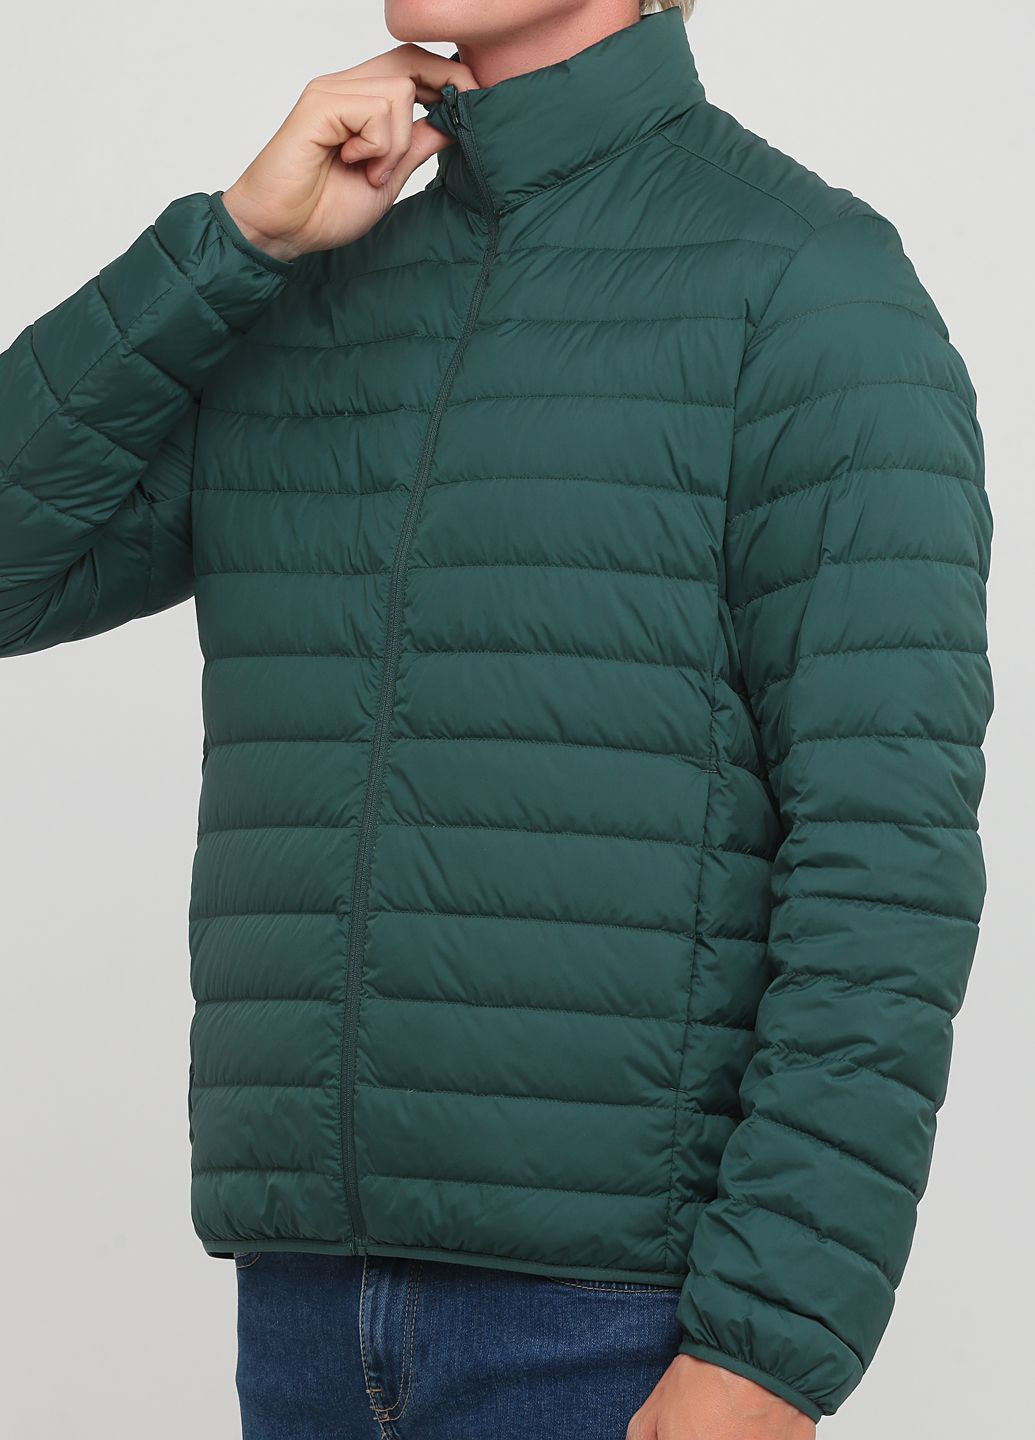 Зеленая демисезонная куртка демисезонная - мужская куртка uq0318m Uniqlo